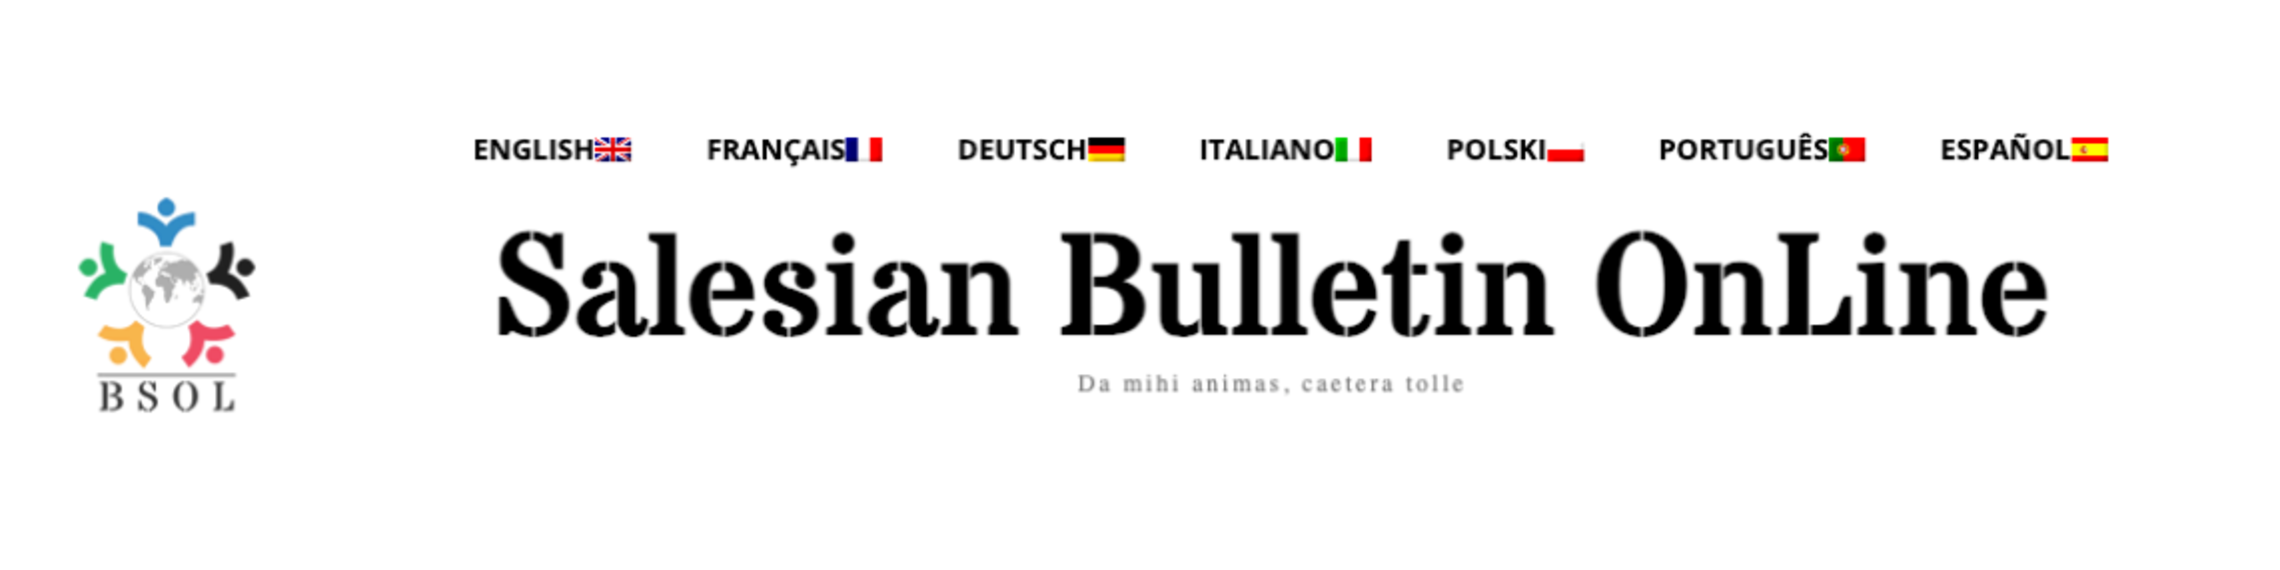 Salesian Bulletin Online